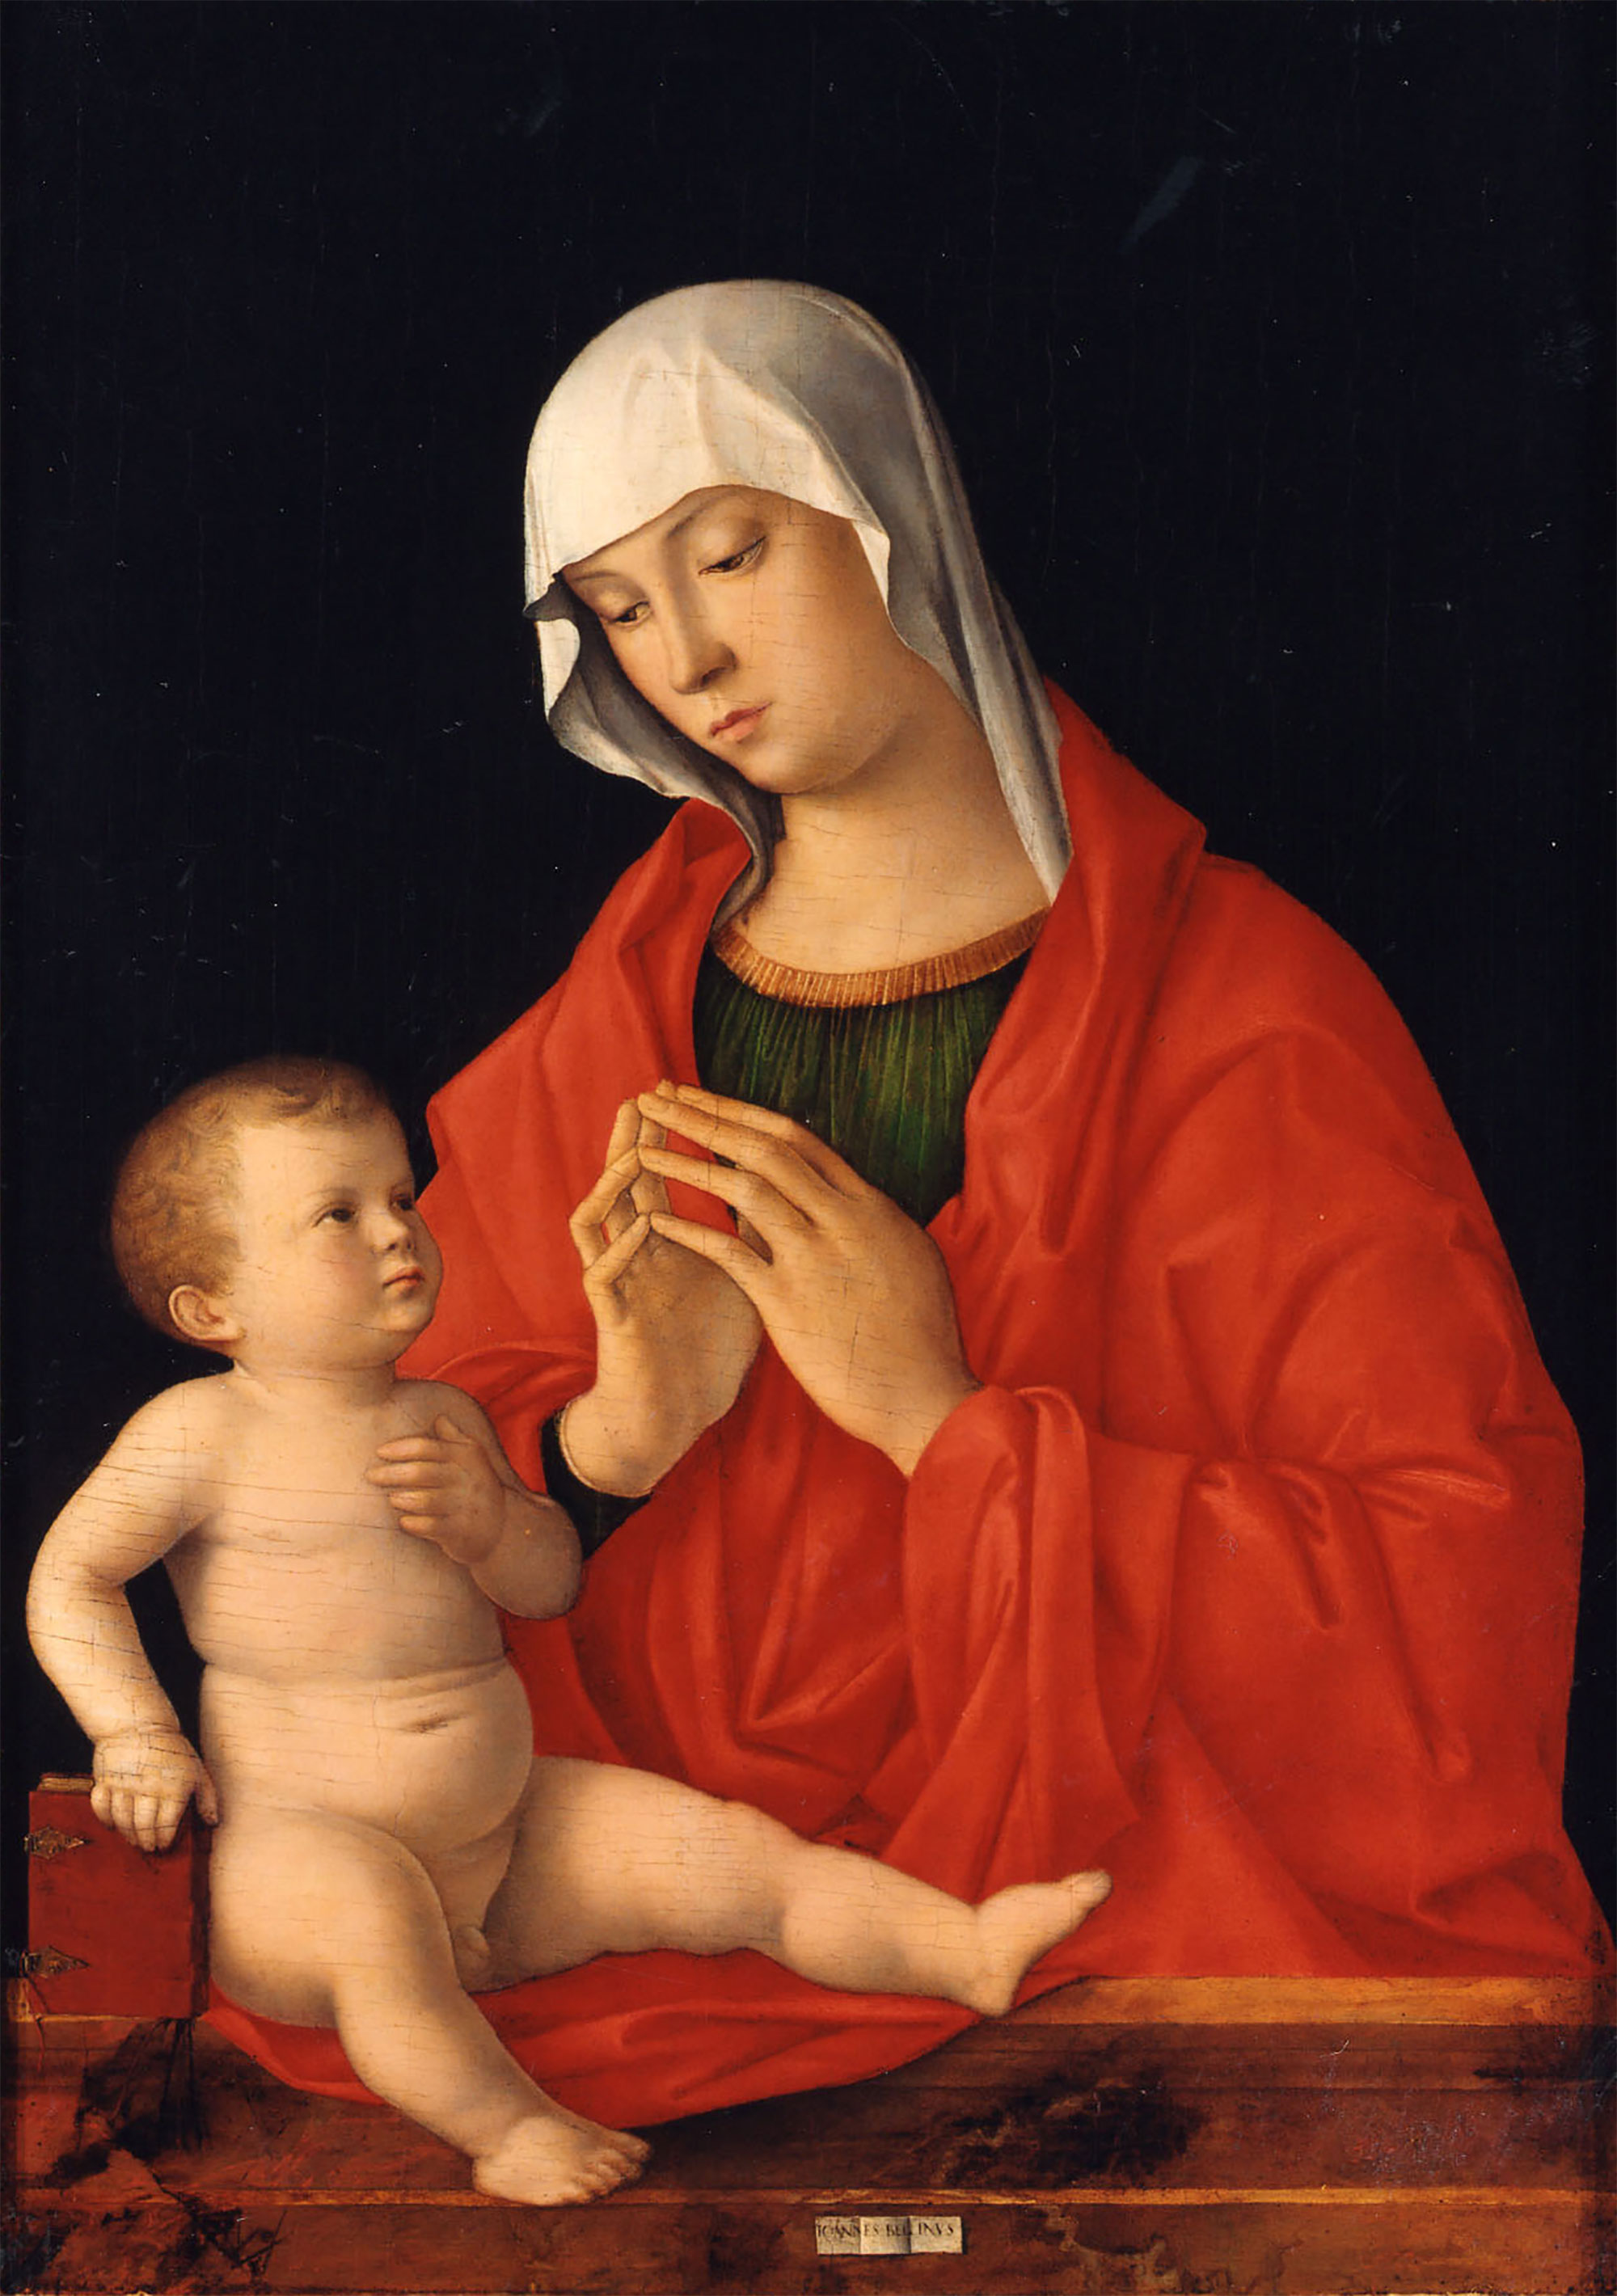 Giovanni Bellini's Madonna and Child